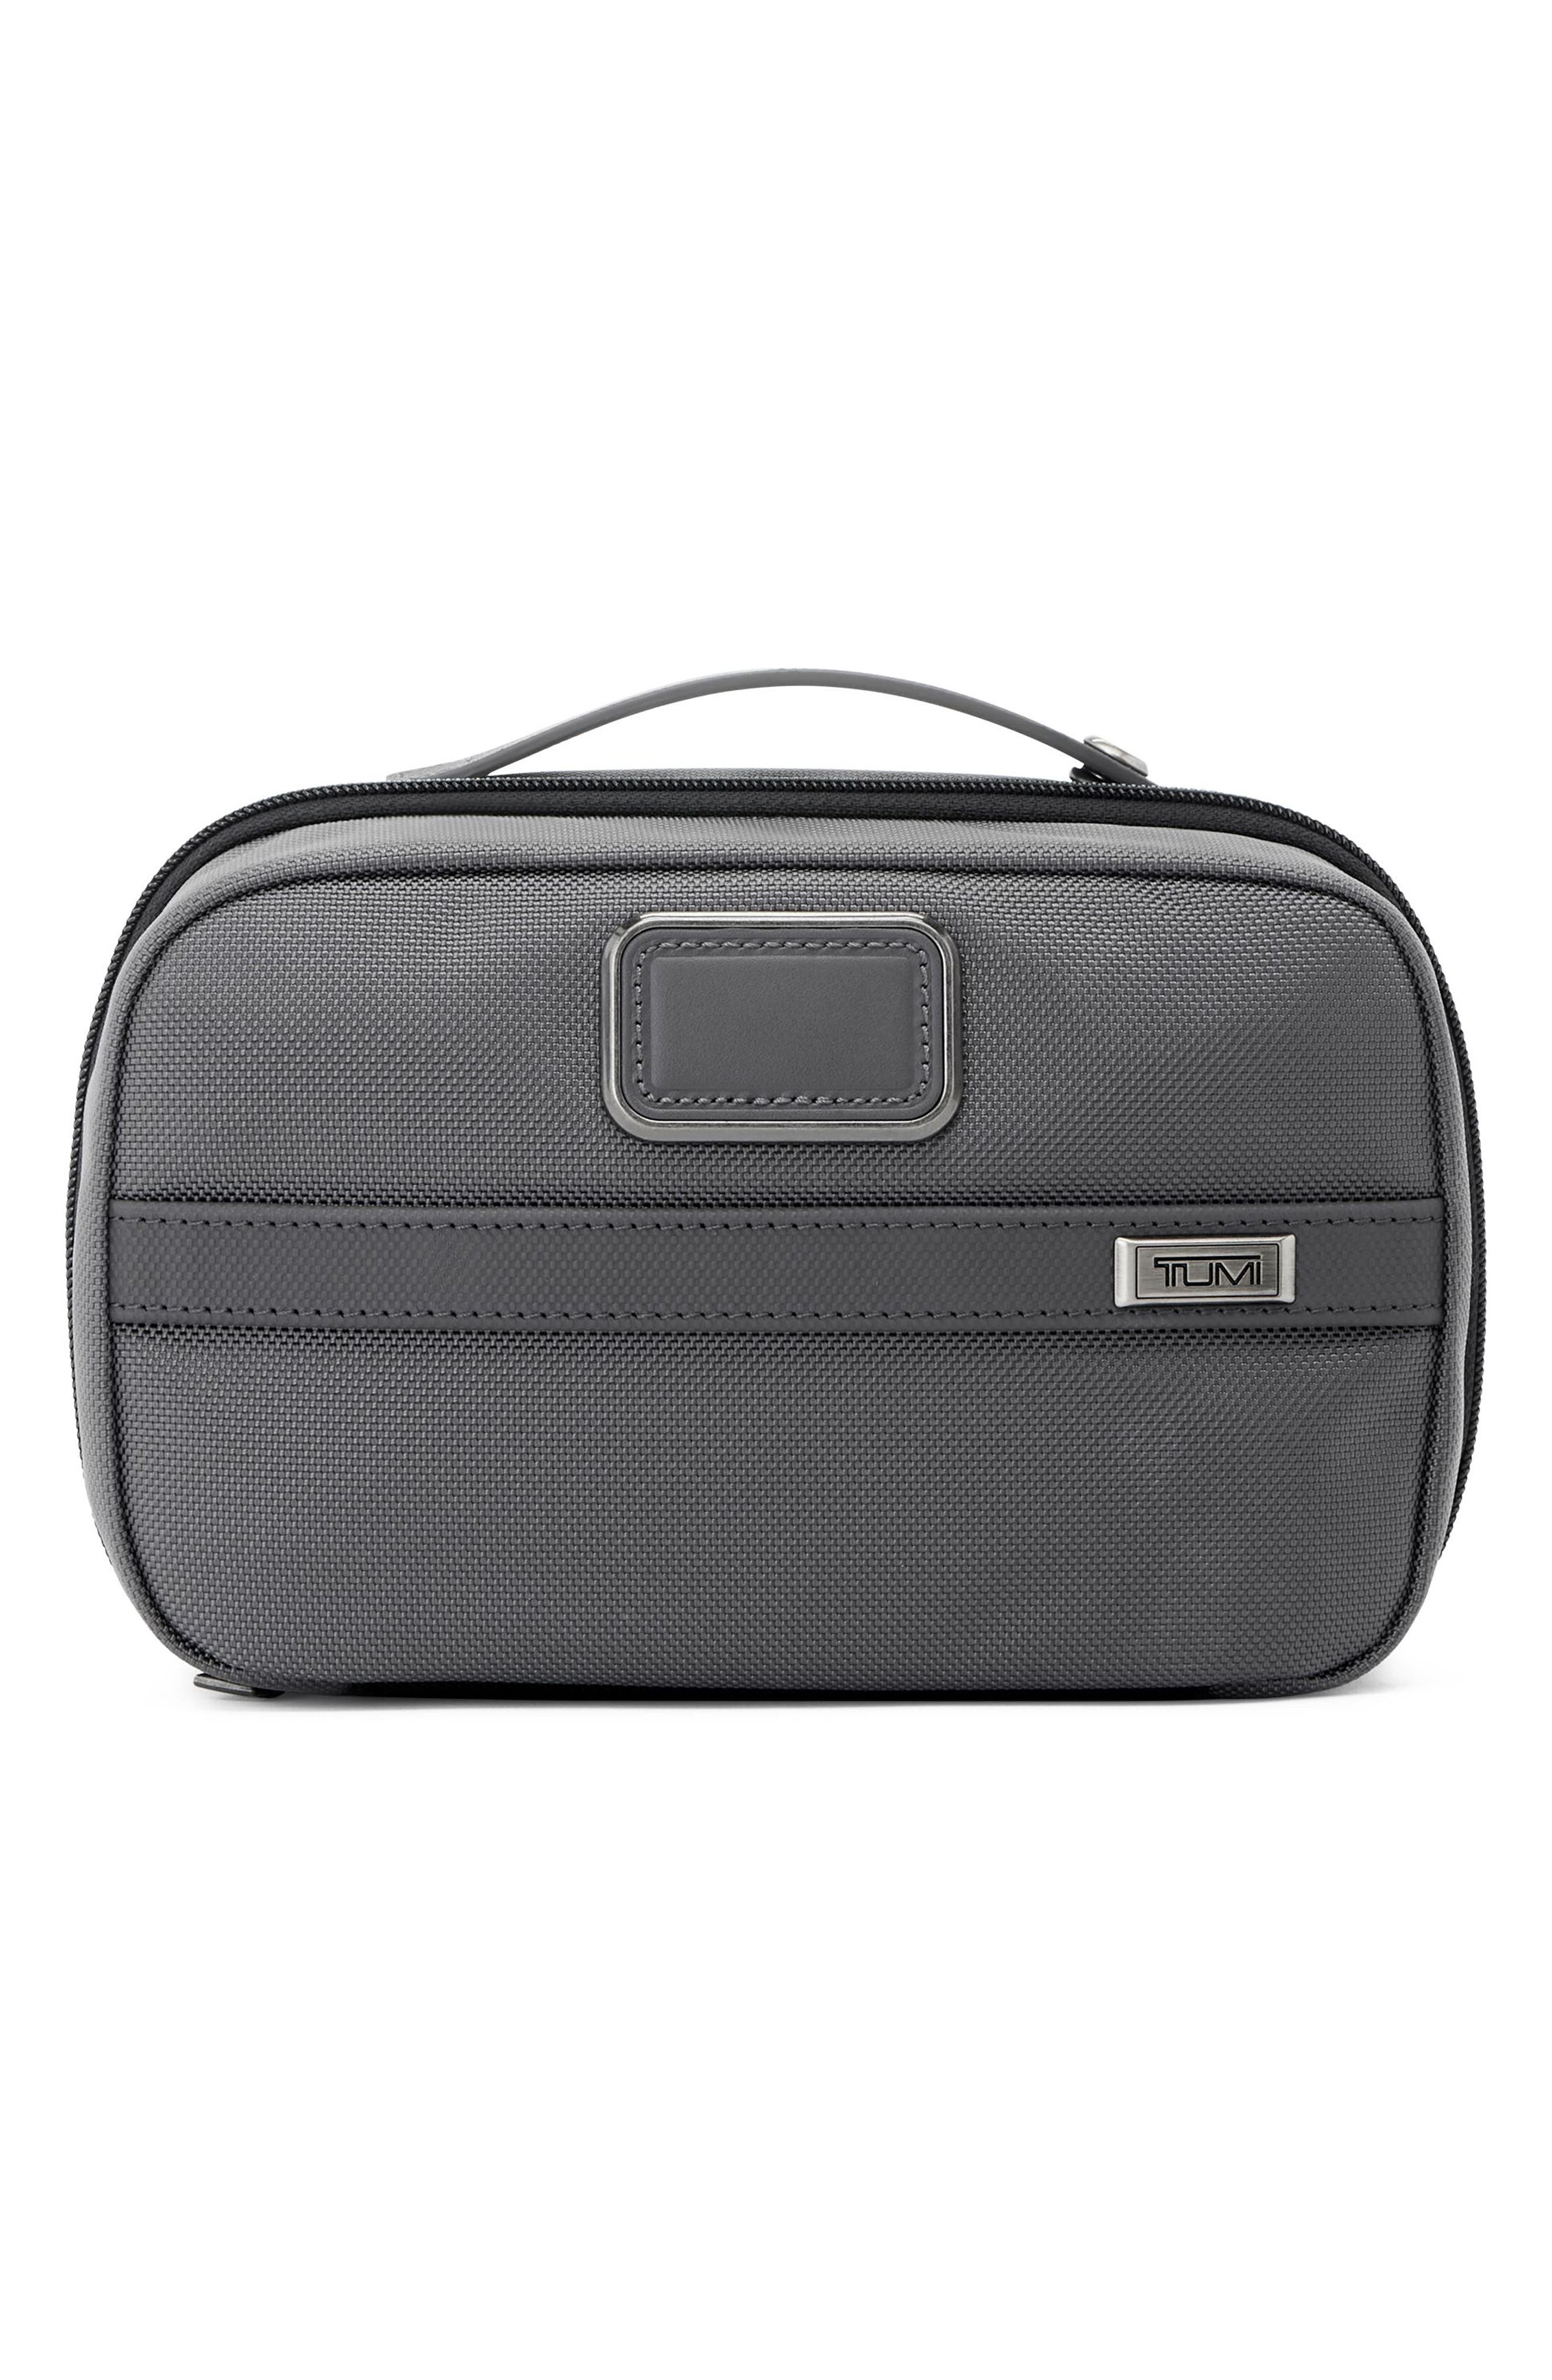 Household Essentials Black Travel Tie Organizer Polyester Bag Case Men Gift New 